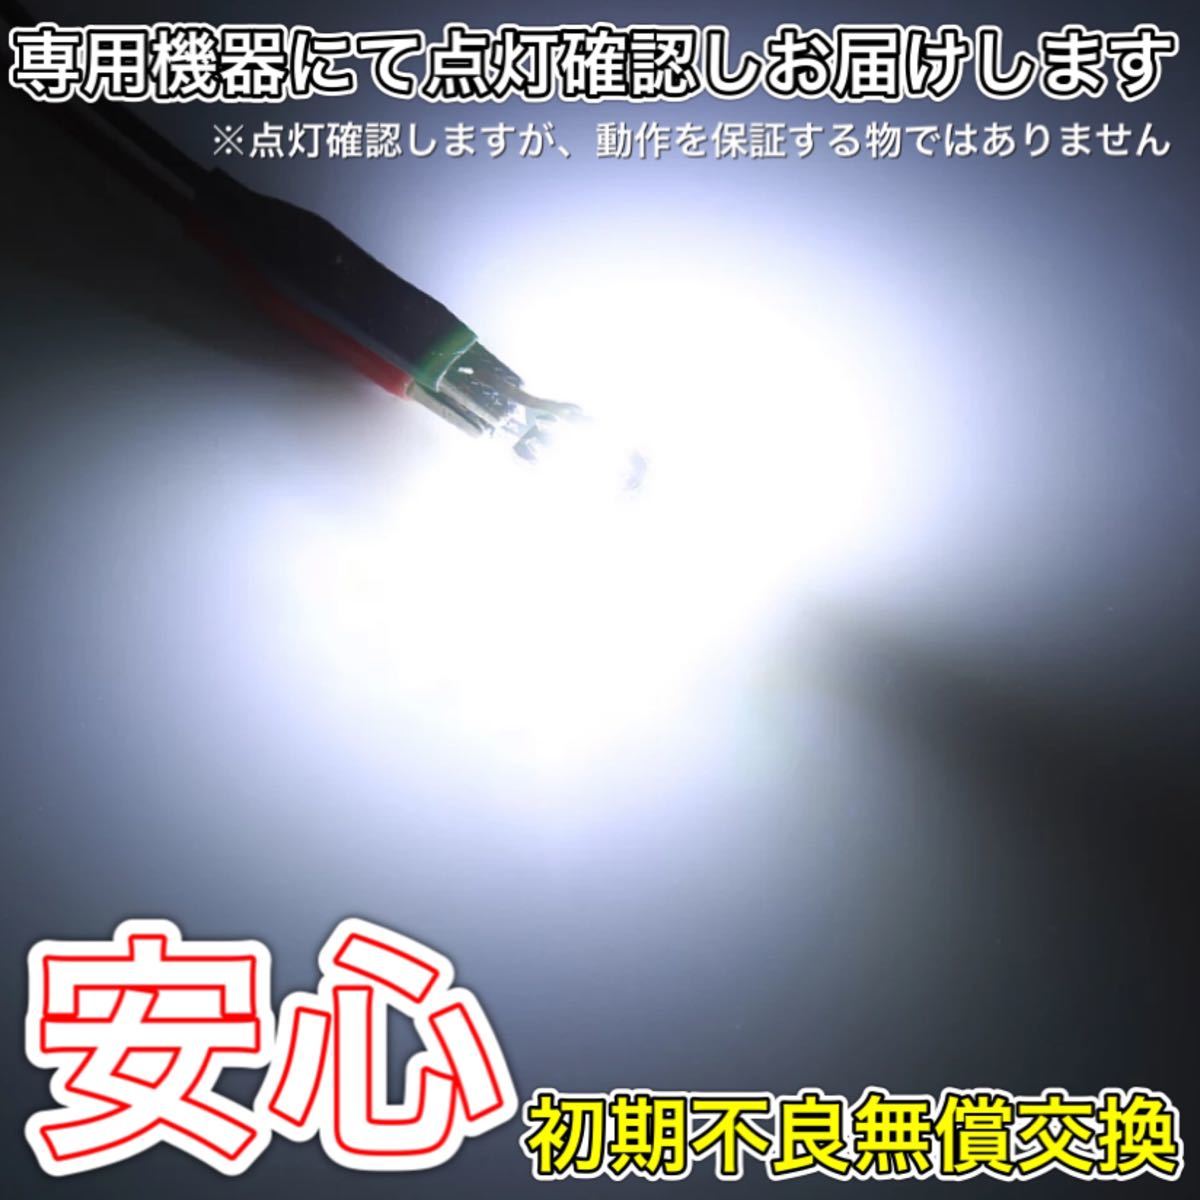 T10 LED 5730chip 8SMD 6個　ルームランプ　ナンバー灯　 ウェッジ球 爆光 LEDポジションランプ 高輝度